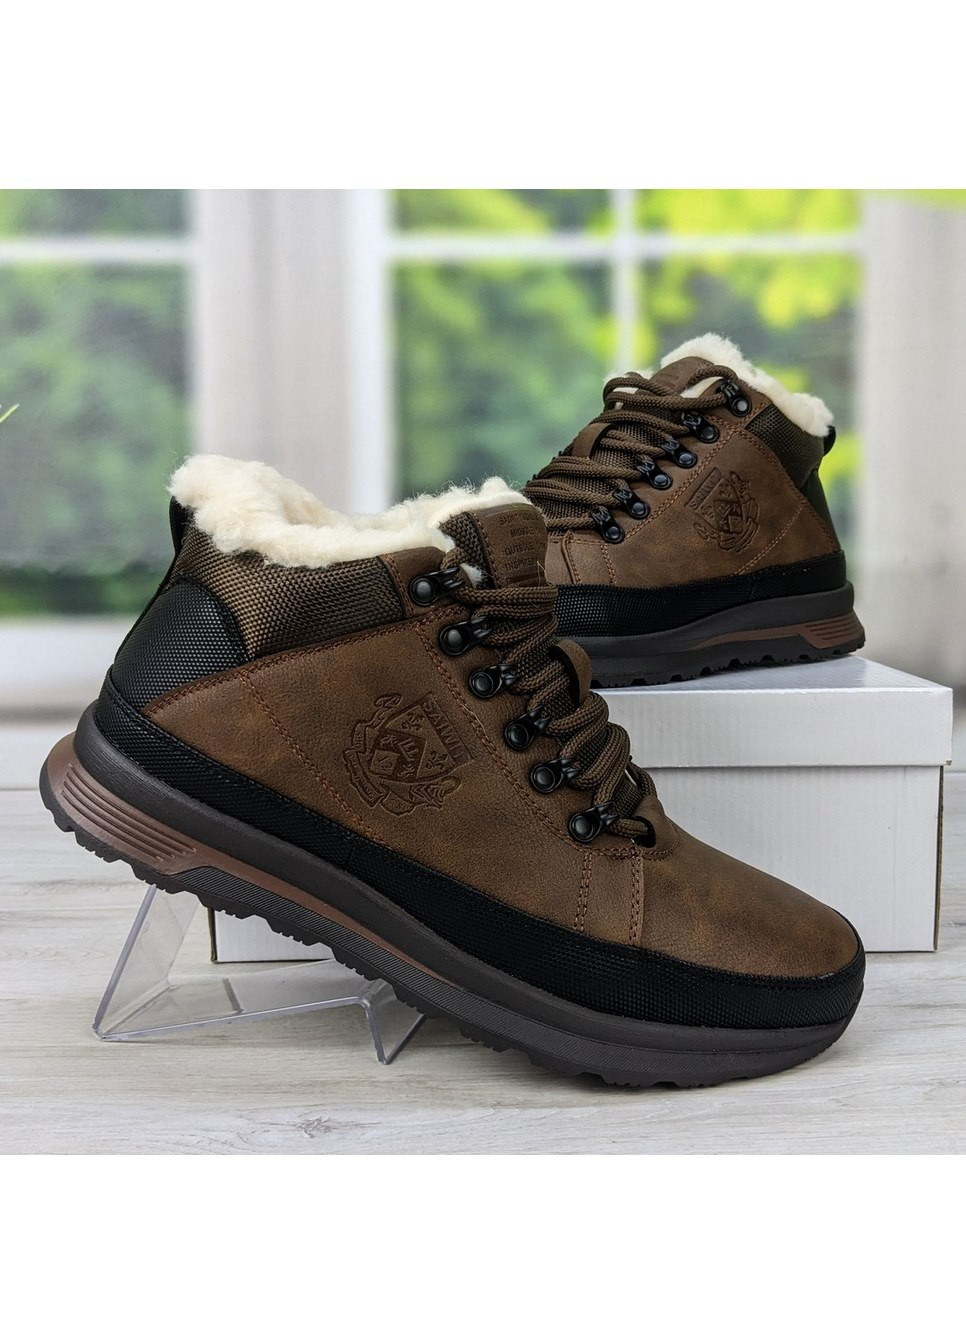 Коричневые зимние ботинки мужские зимние коричневые эко-кожа SAIWIT